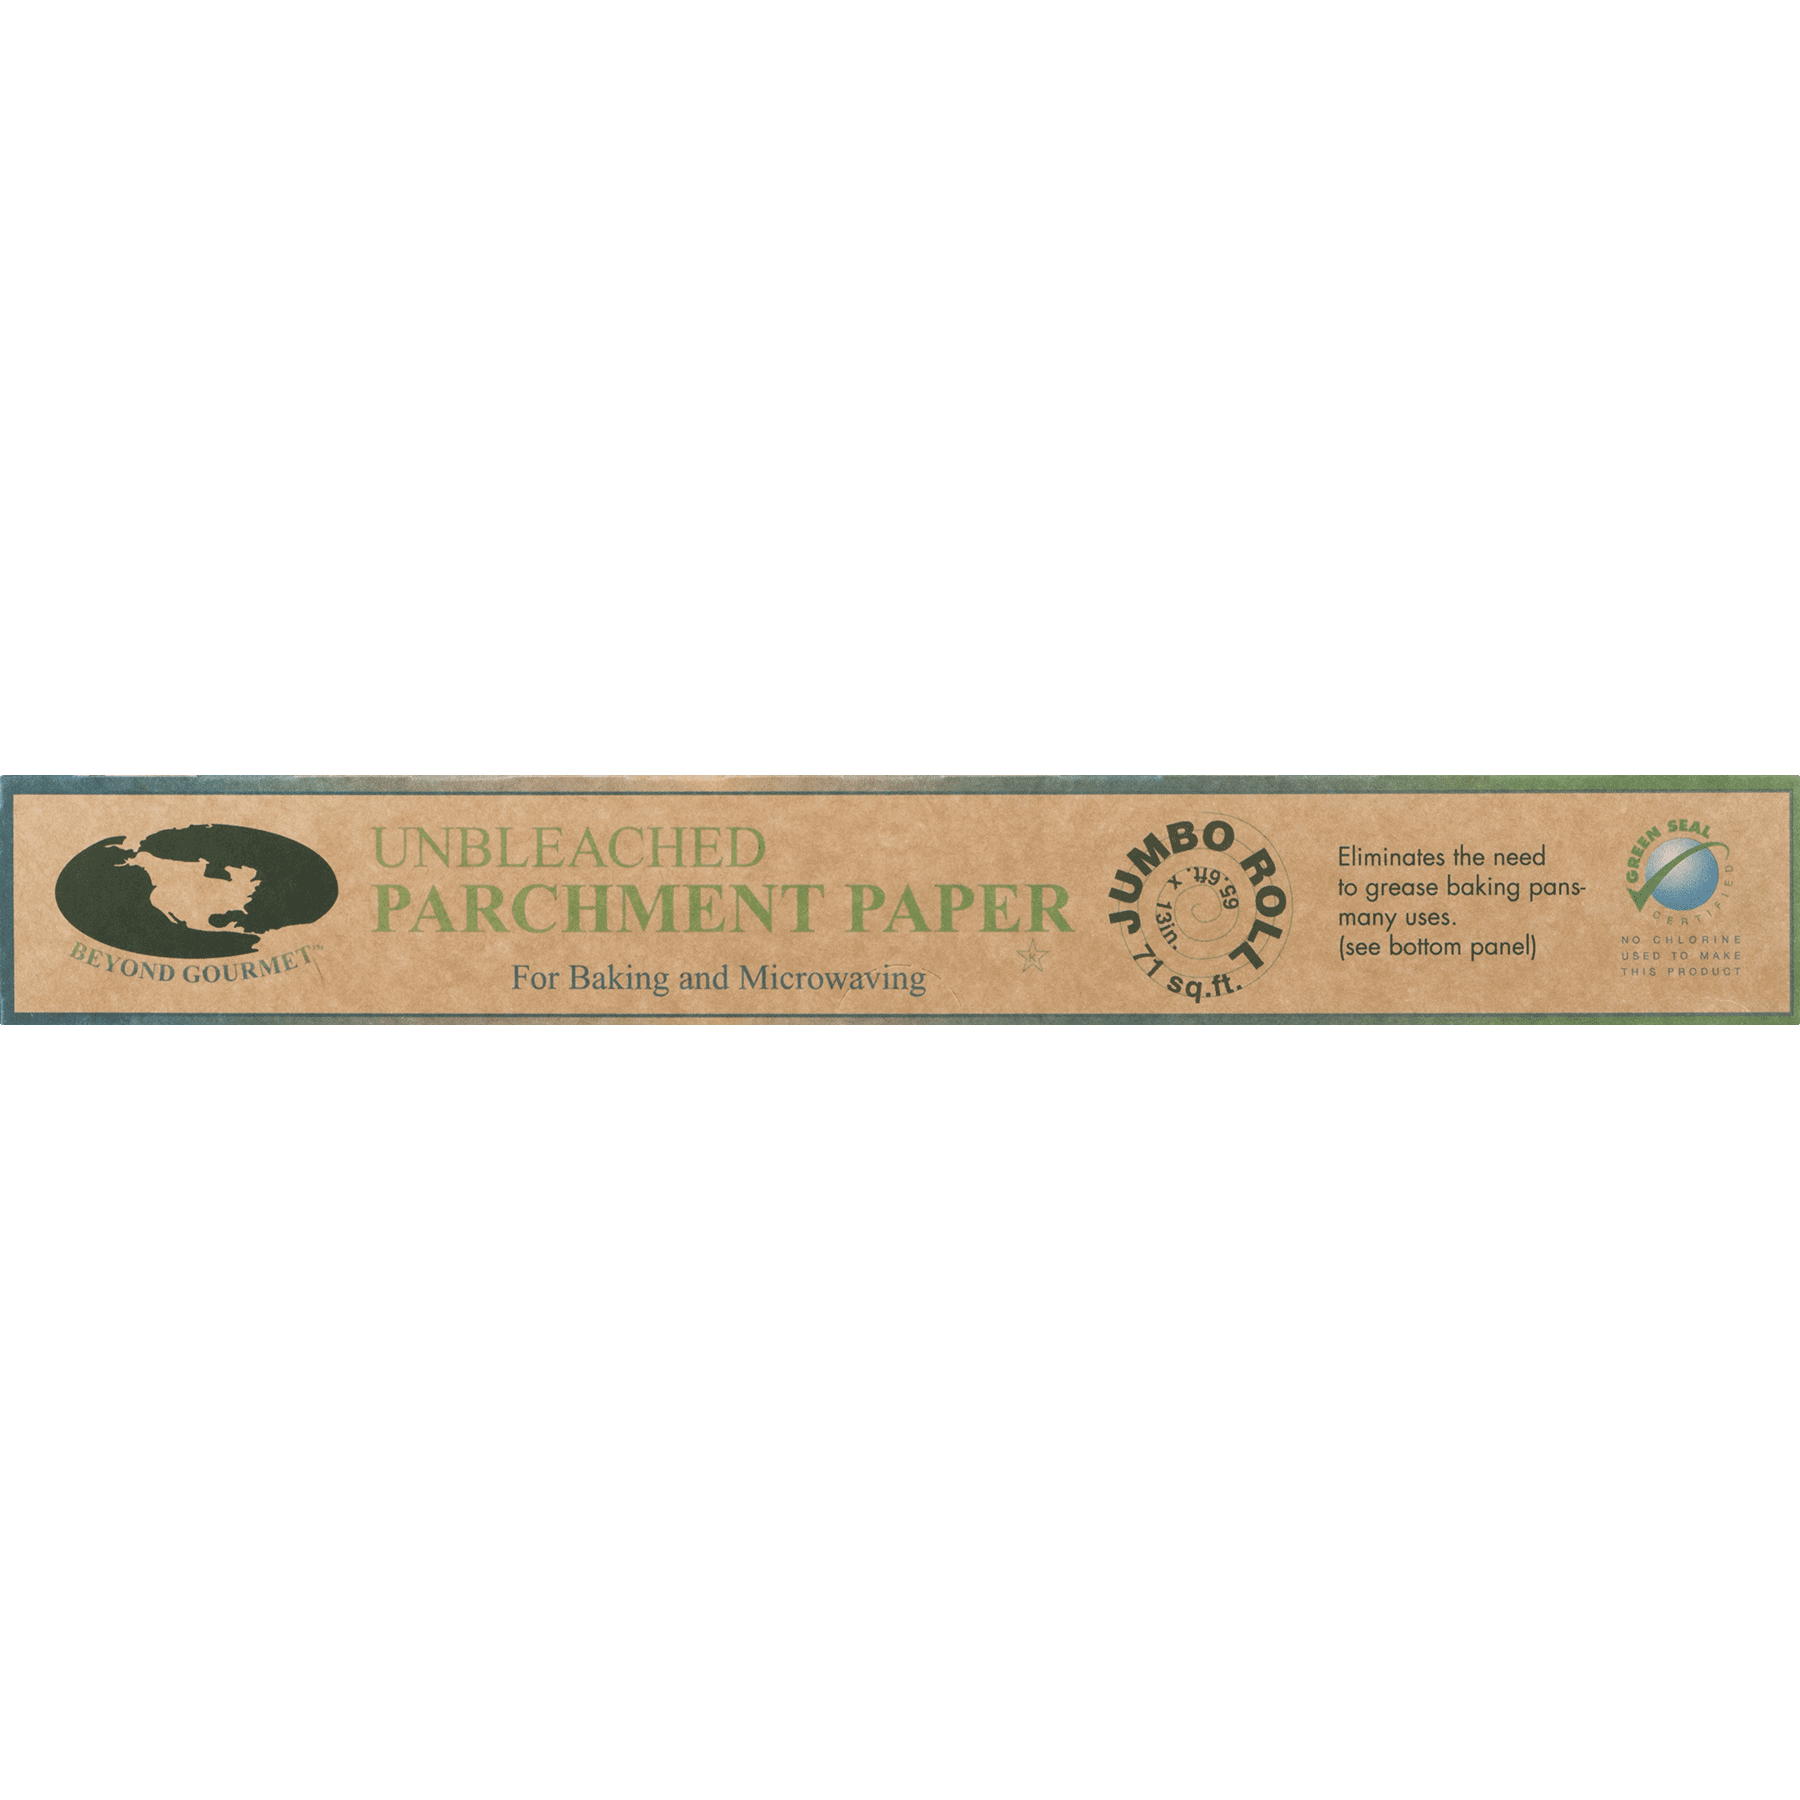 Beyond Gourmet - Unbleached Parchment Paper